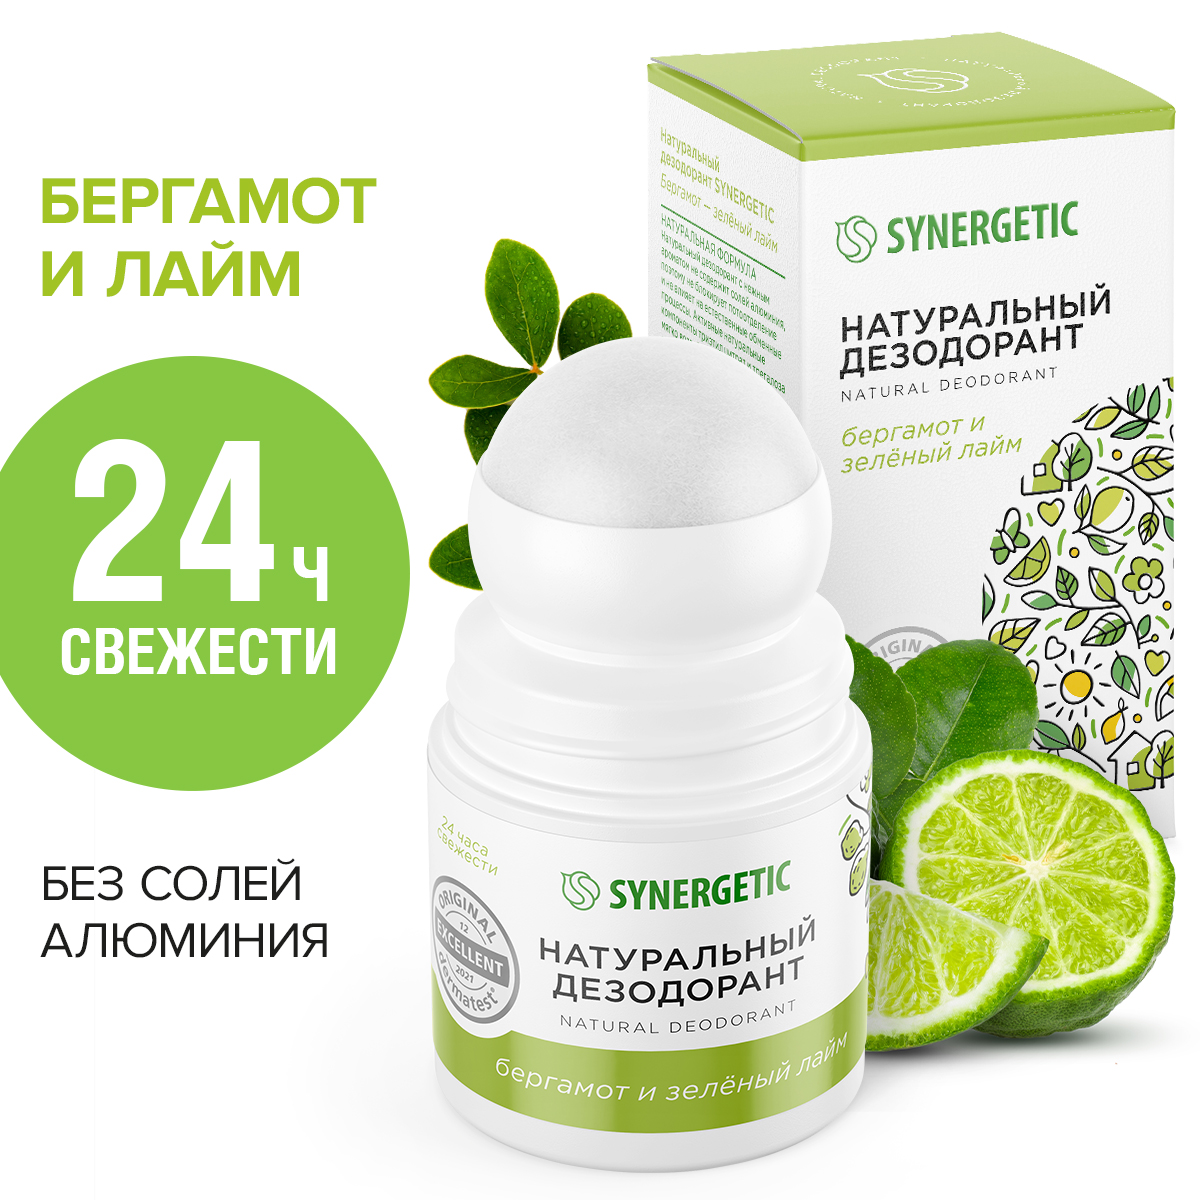 Дезодорант Synergetic бергамот-зеленый лайм, натуральный, 50 мл дезодорант synergetic бергамот зеленый лайм ролик 50 мл